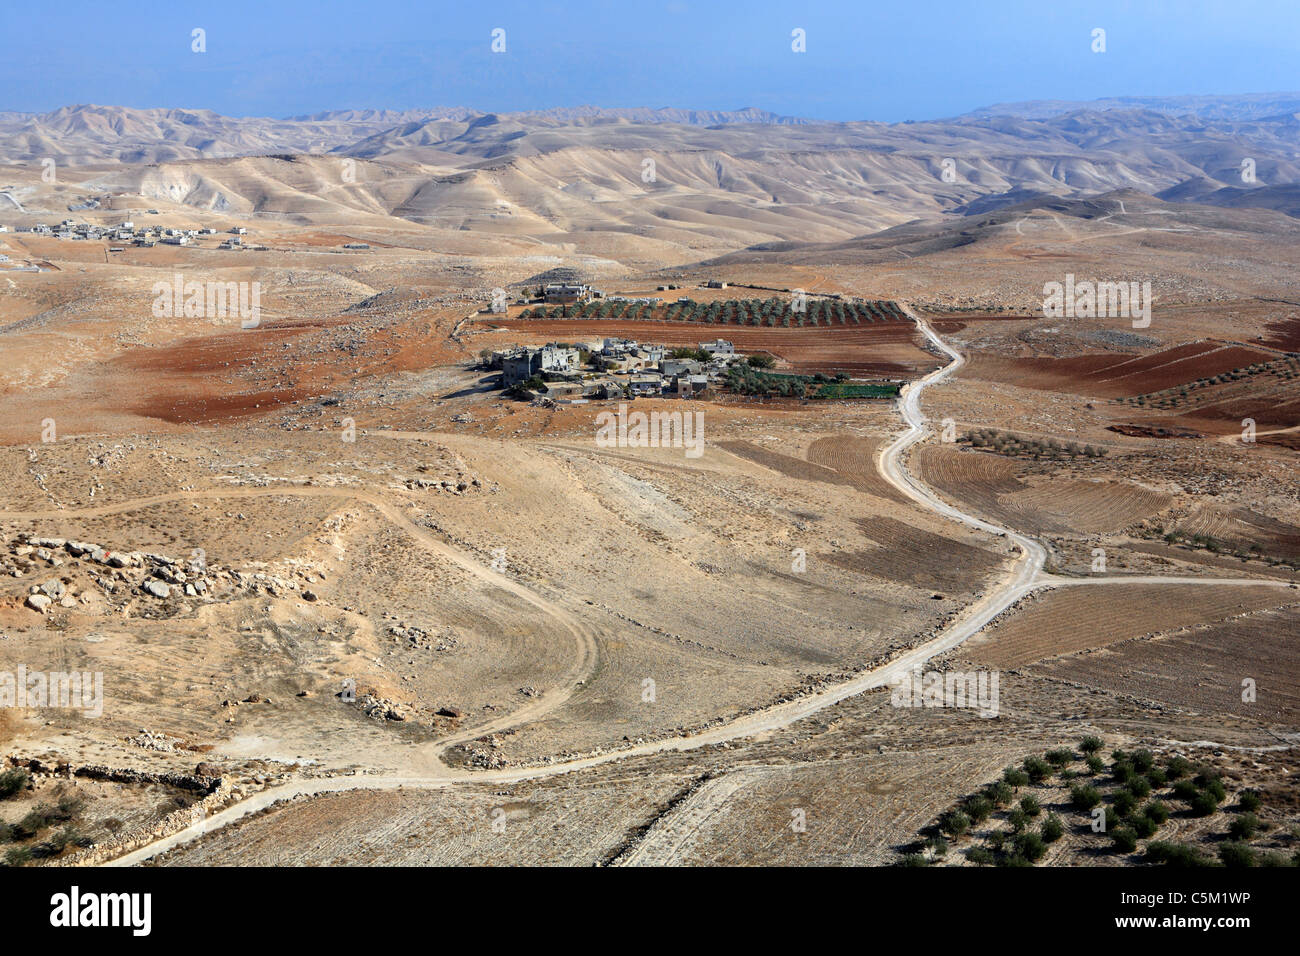 Palast des Herodes der große (1. Jh. v. Chr.), Herodion (Herodium), Israel Stockfoto